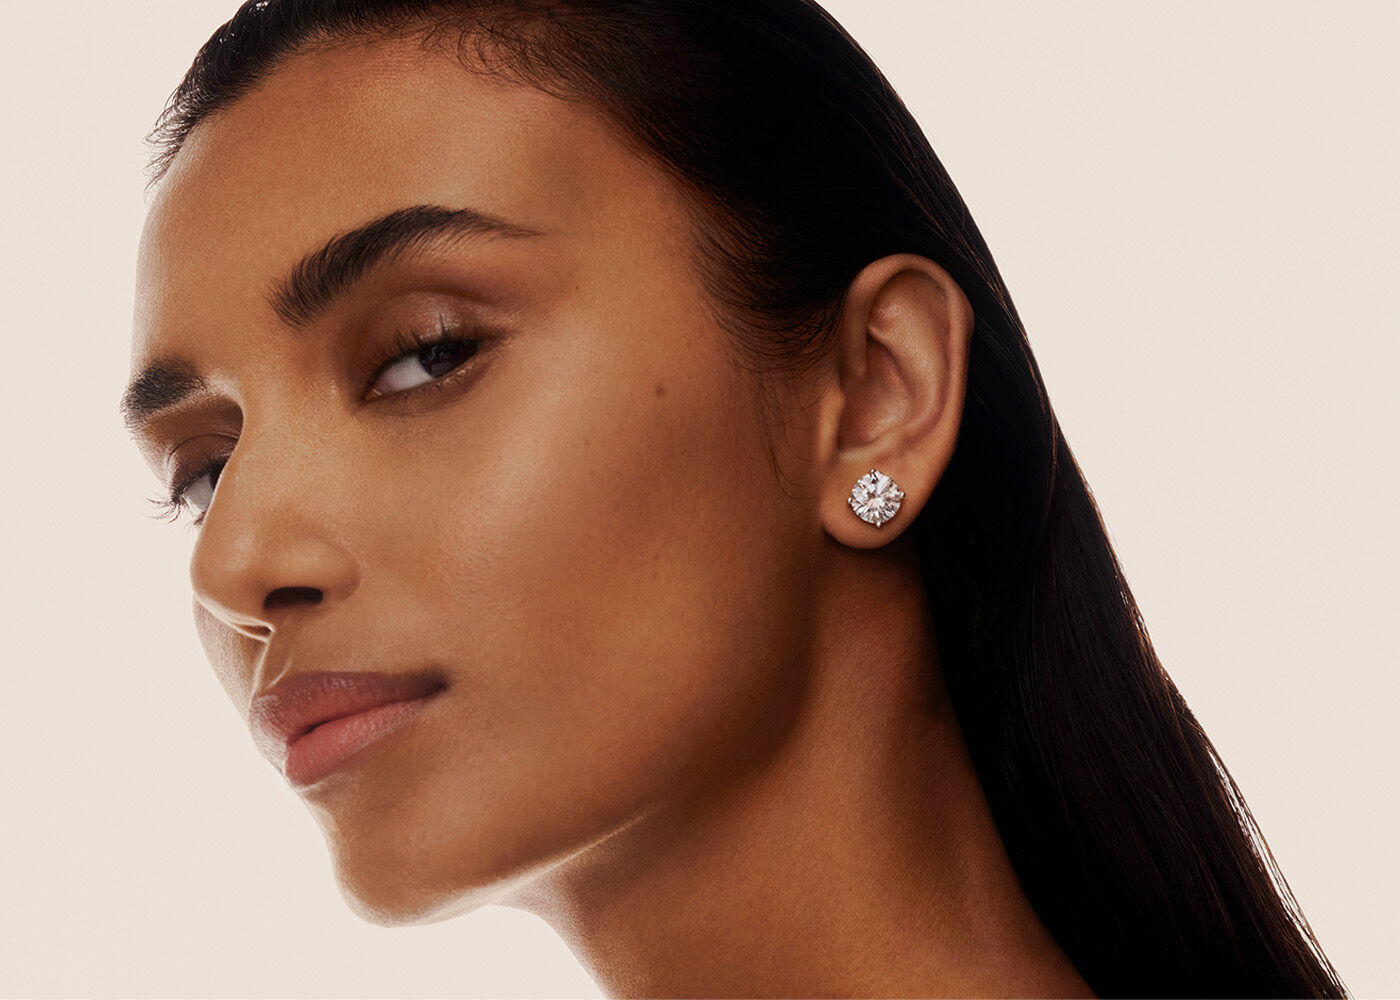 Model wearing a Graff diamond stud earring